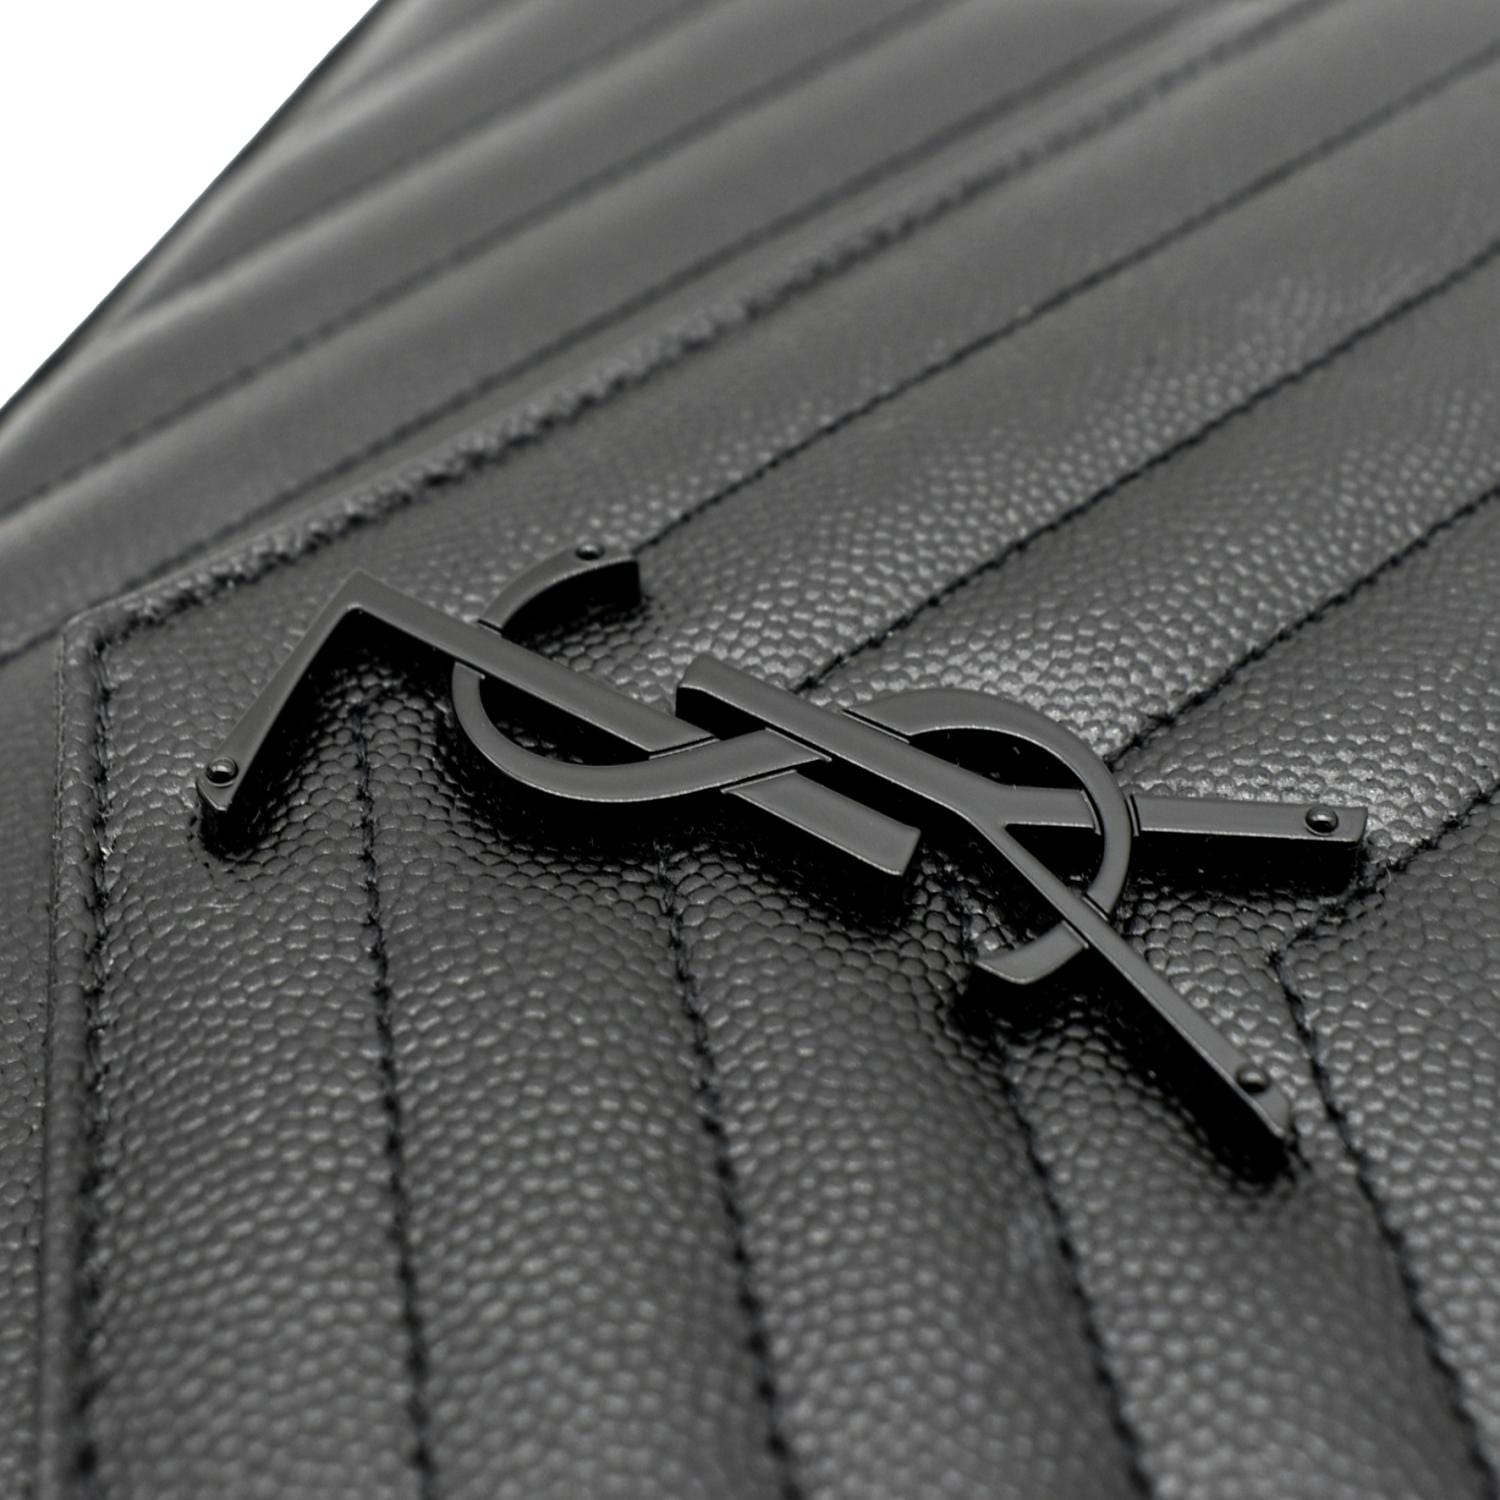 Saint Laurent Cassandra Chain Wallet Leather Mini Black